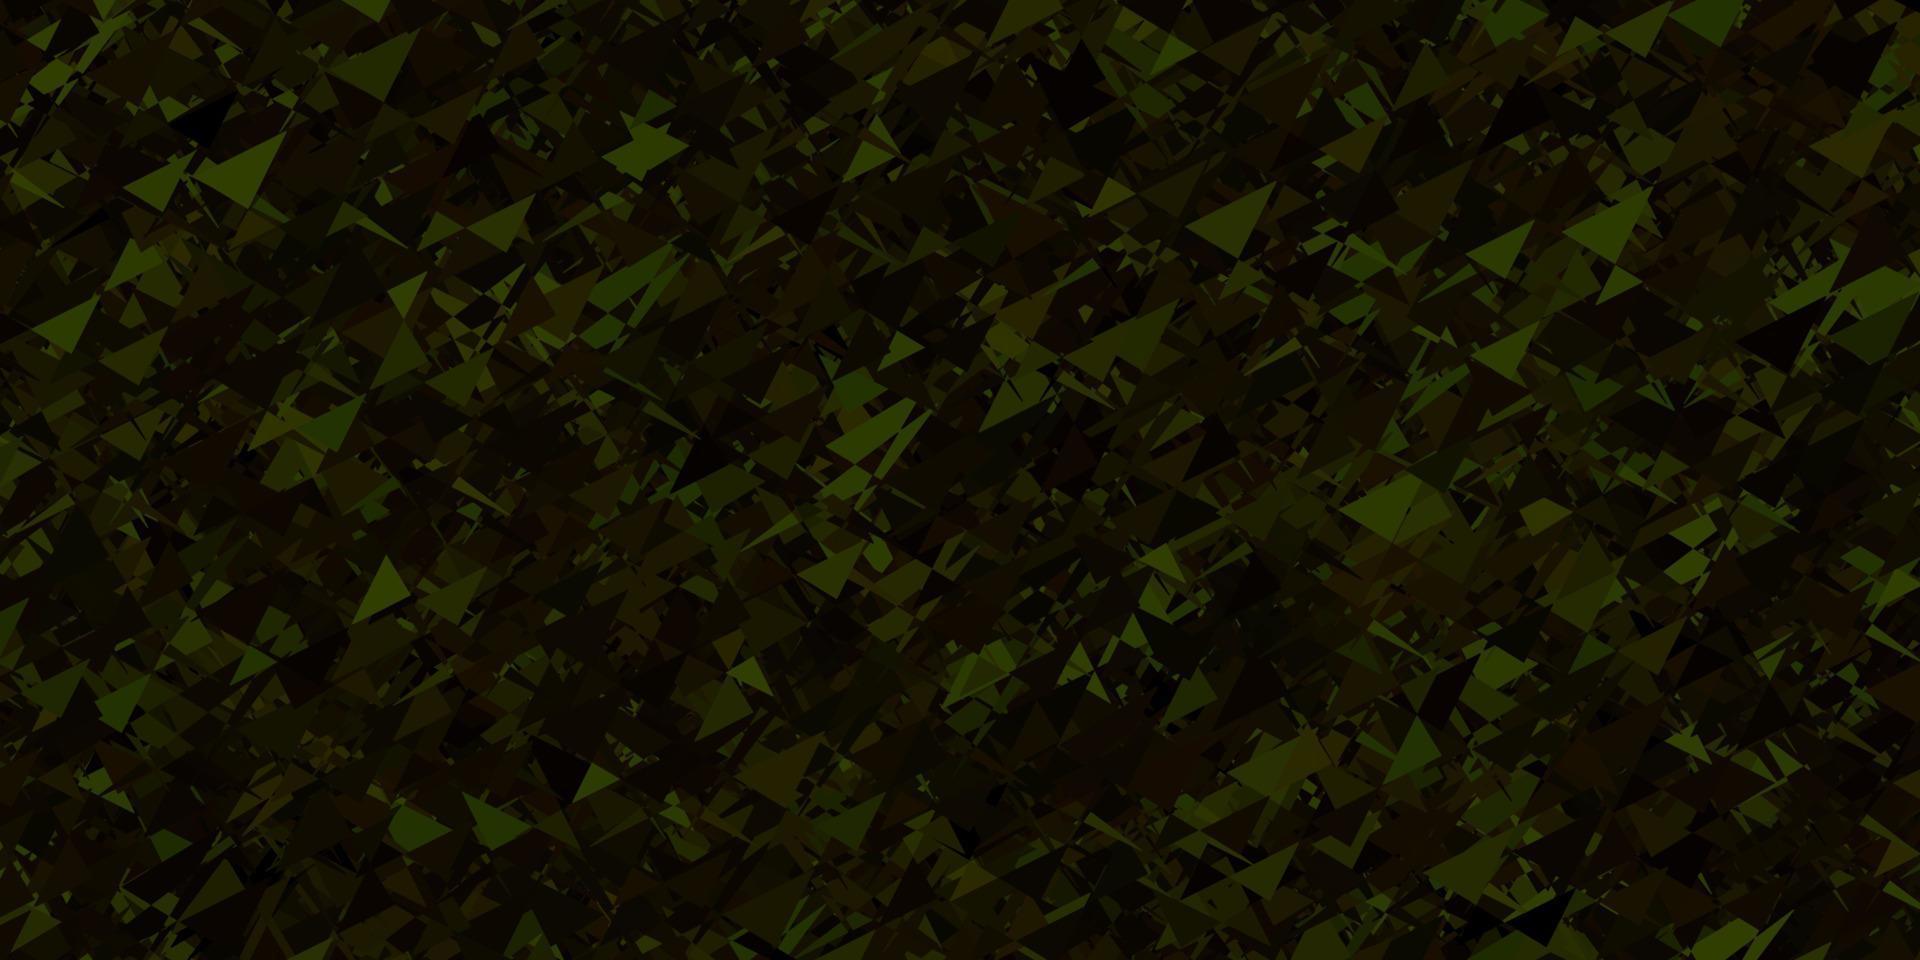 mörkgrön, gul vektorlayout med triangelformer. vektor